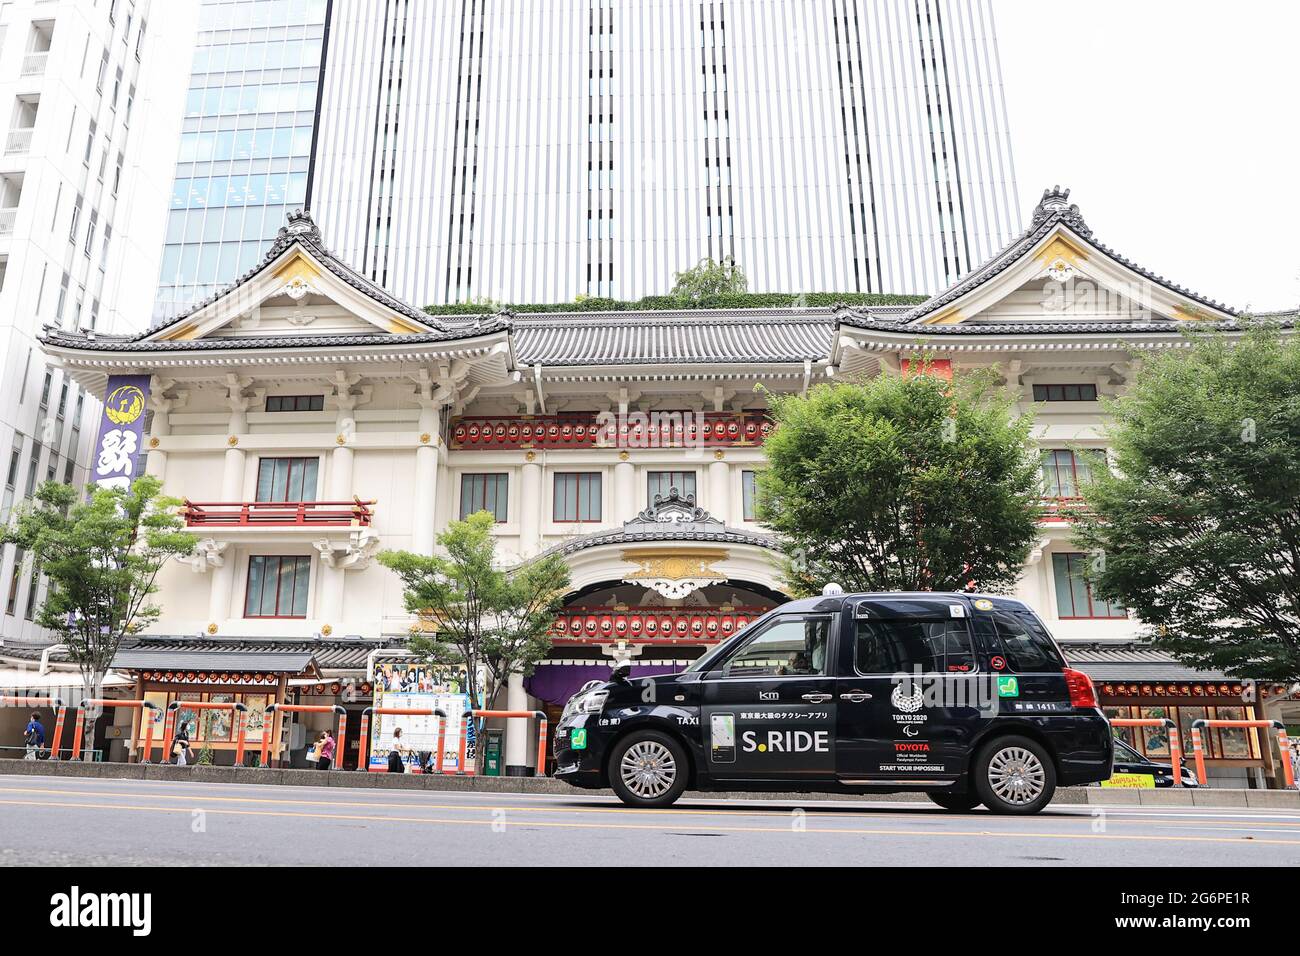 7 DE JULIO de 2021 : Un taxi marcado con el emblema de los Juegos Olímpicos de Tokio 2020 se ve en Tokio, Japón. Crédito: AFLO SPORT/ALAMY Live News Foto de stock